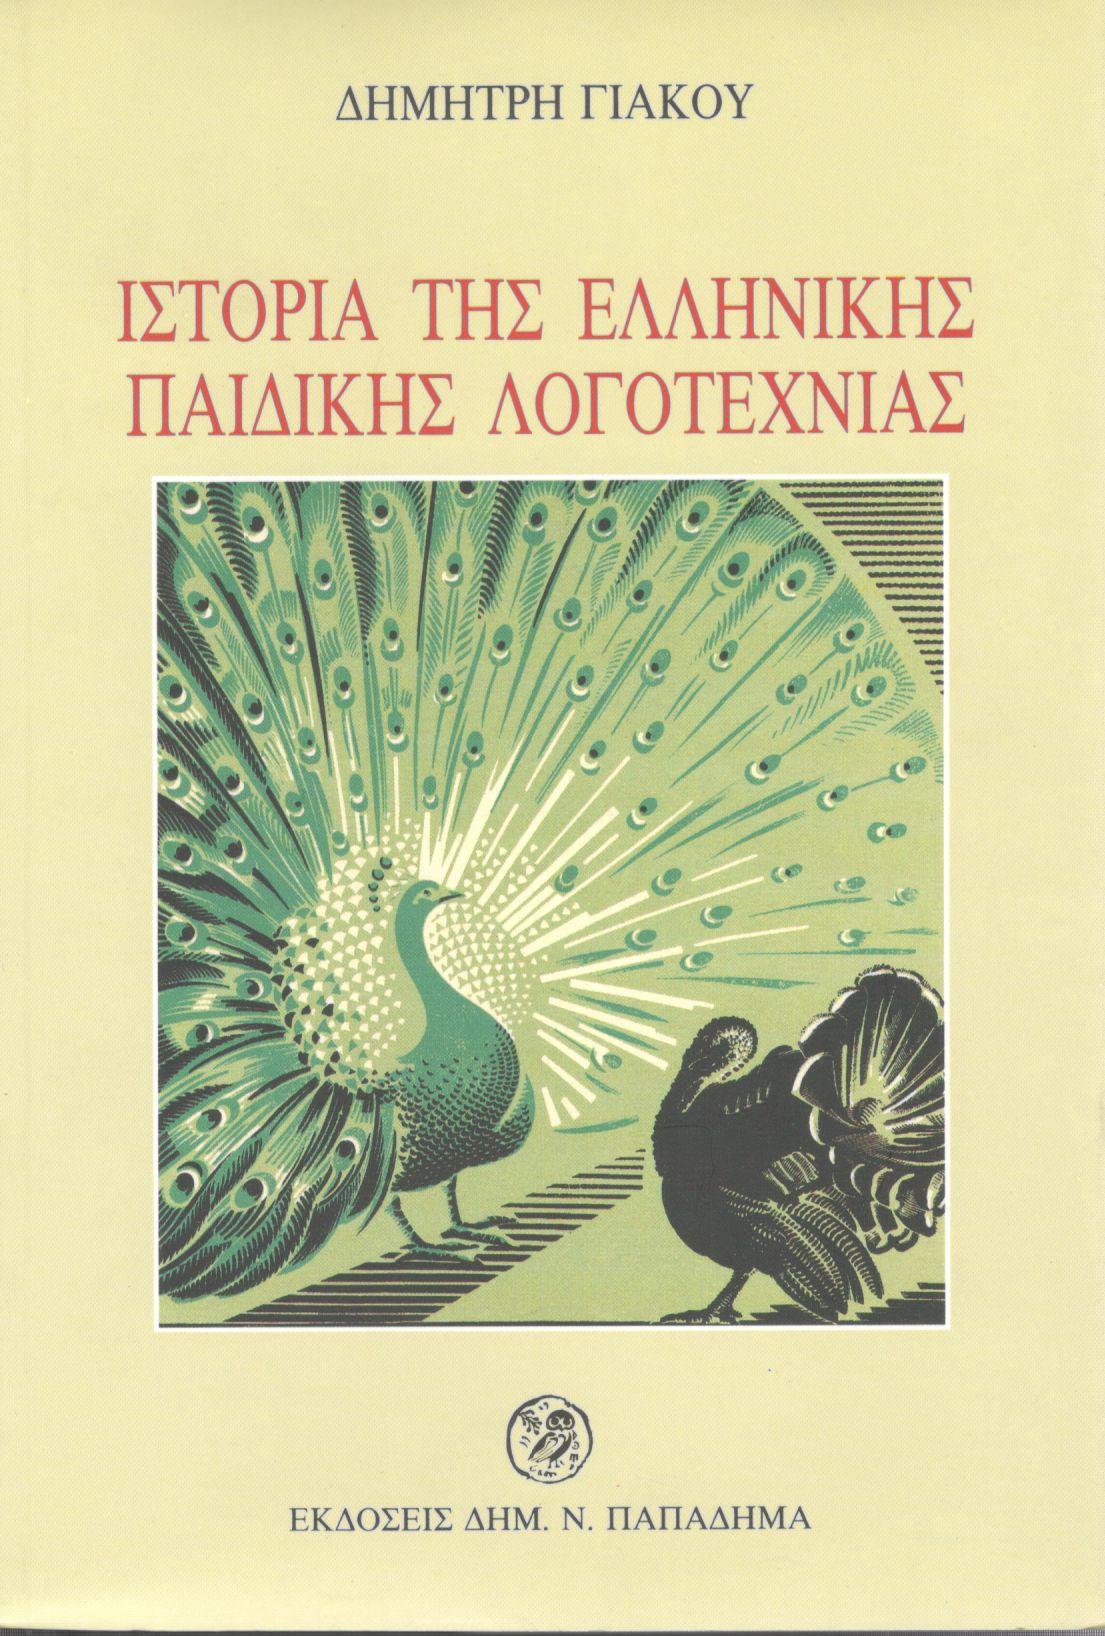 Ιστορία της ελληνικής παιδικής λογοτεχνίας του ΙΘ' και του Κ' αιώνα